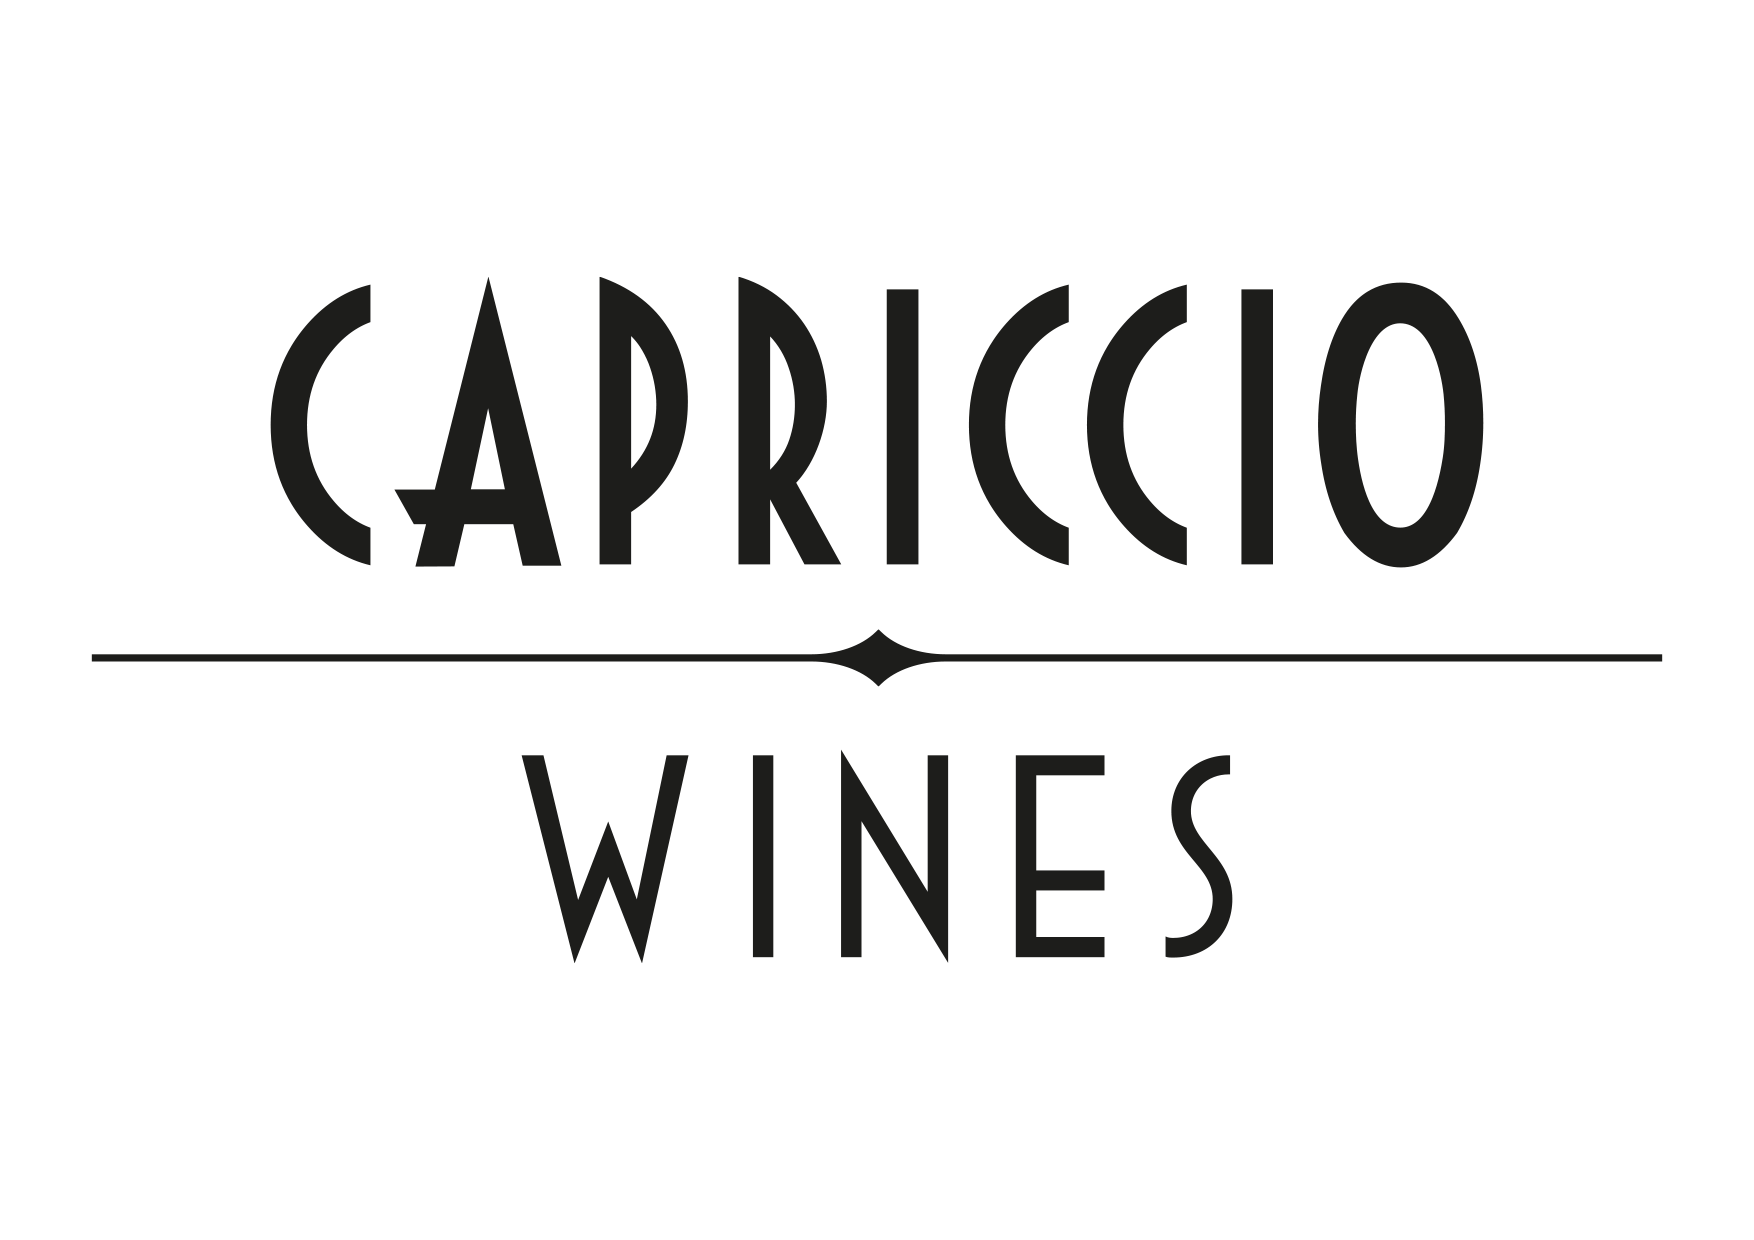 CAPRICCIO WINES